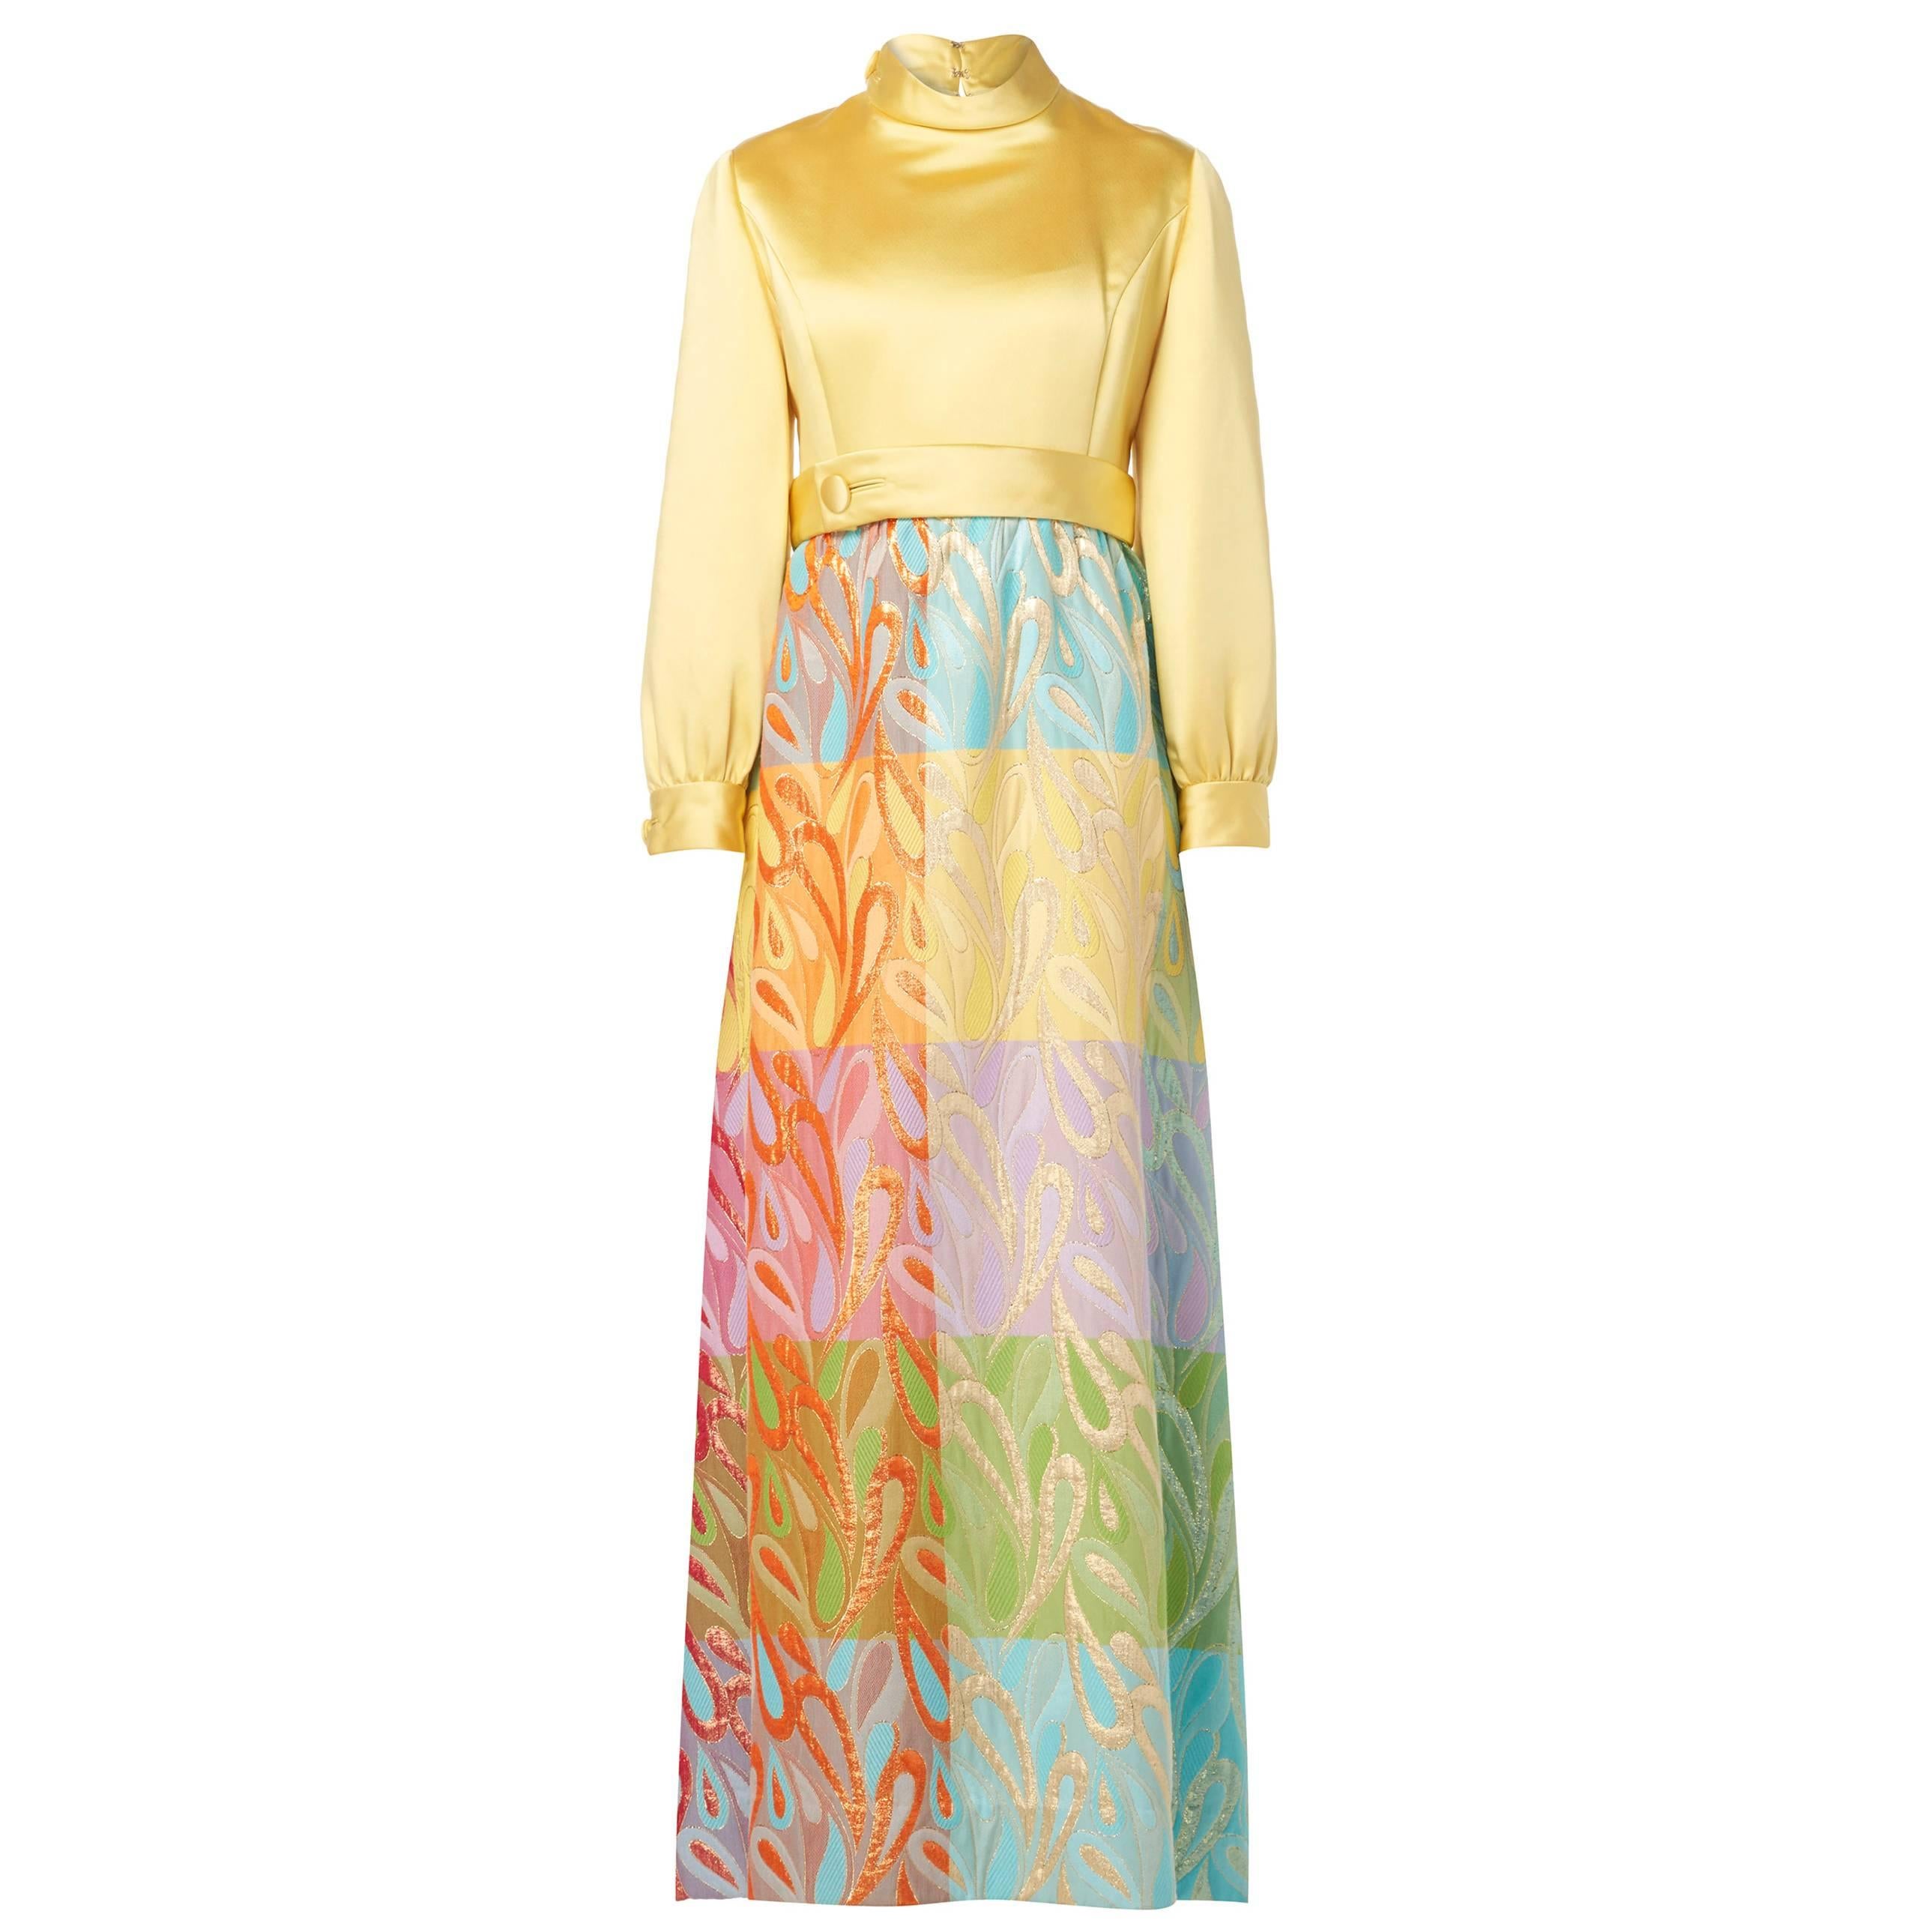 Malcolm Starr multicoloured dress, circa 1968